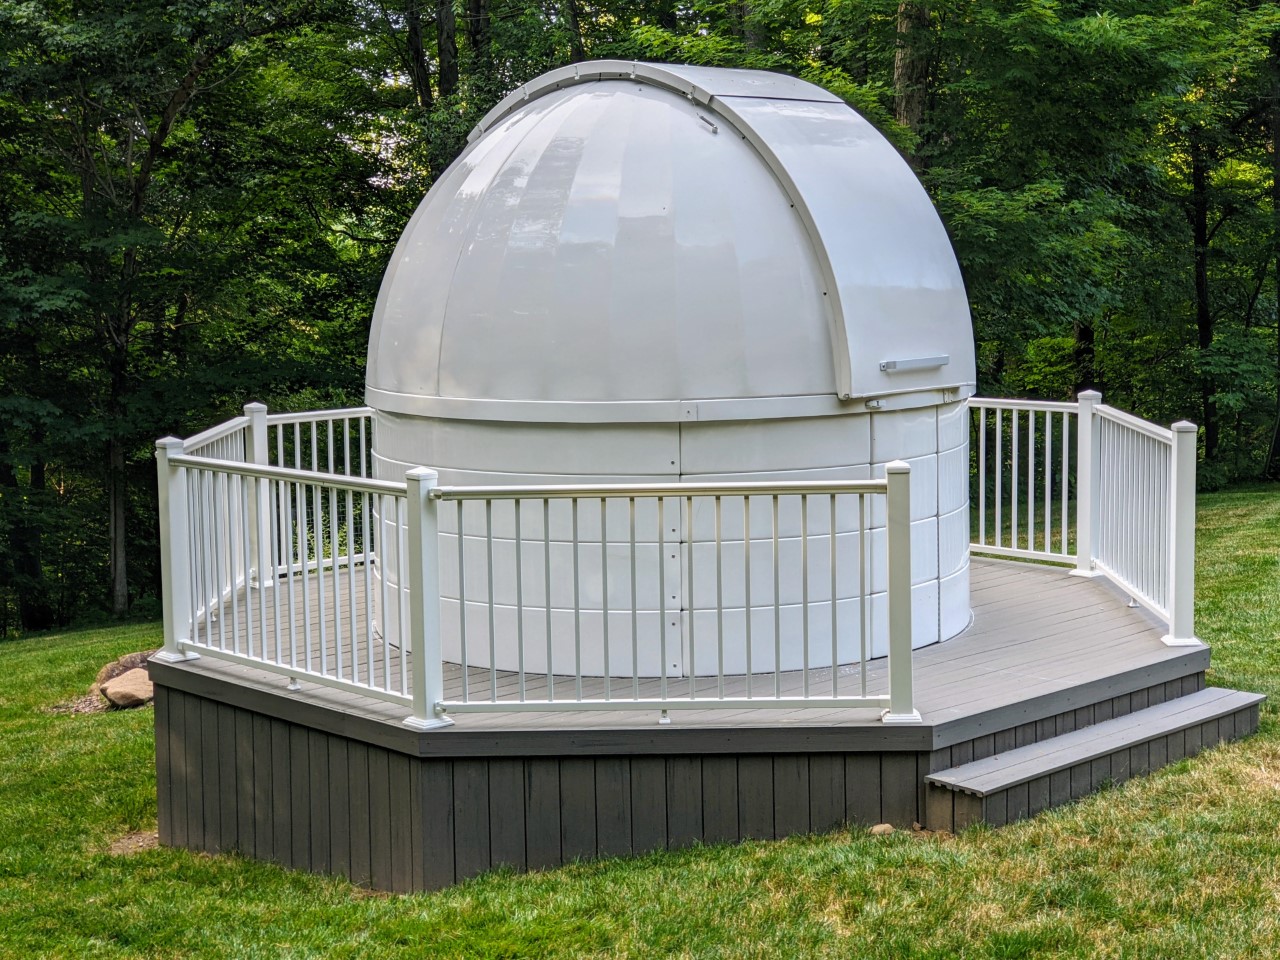 A Platform for a Backyard Observatory